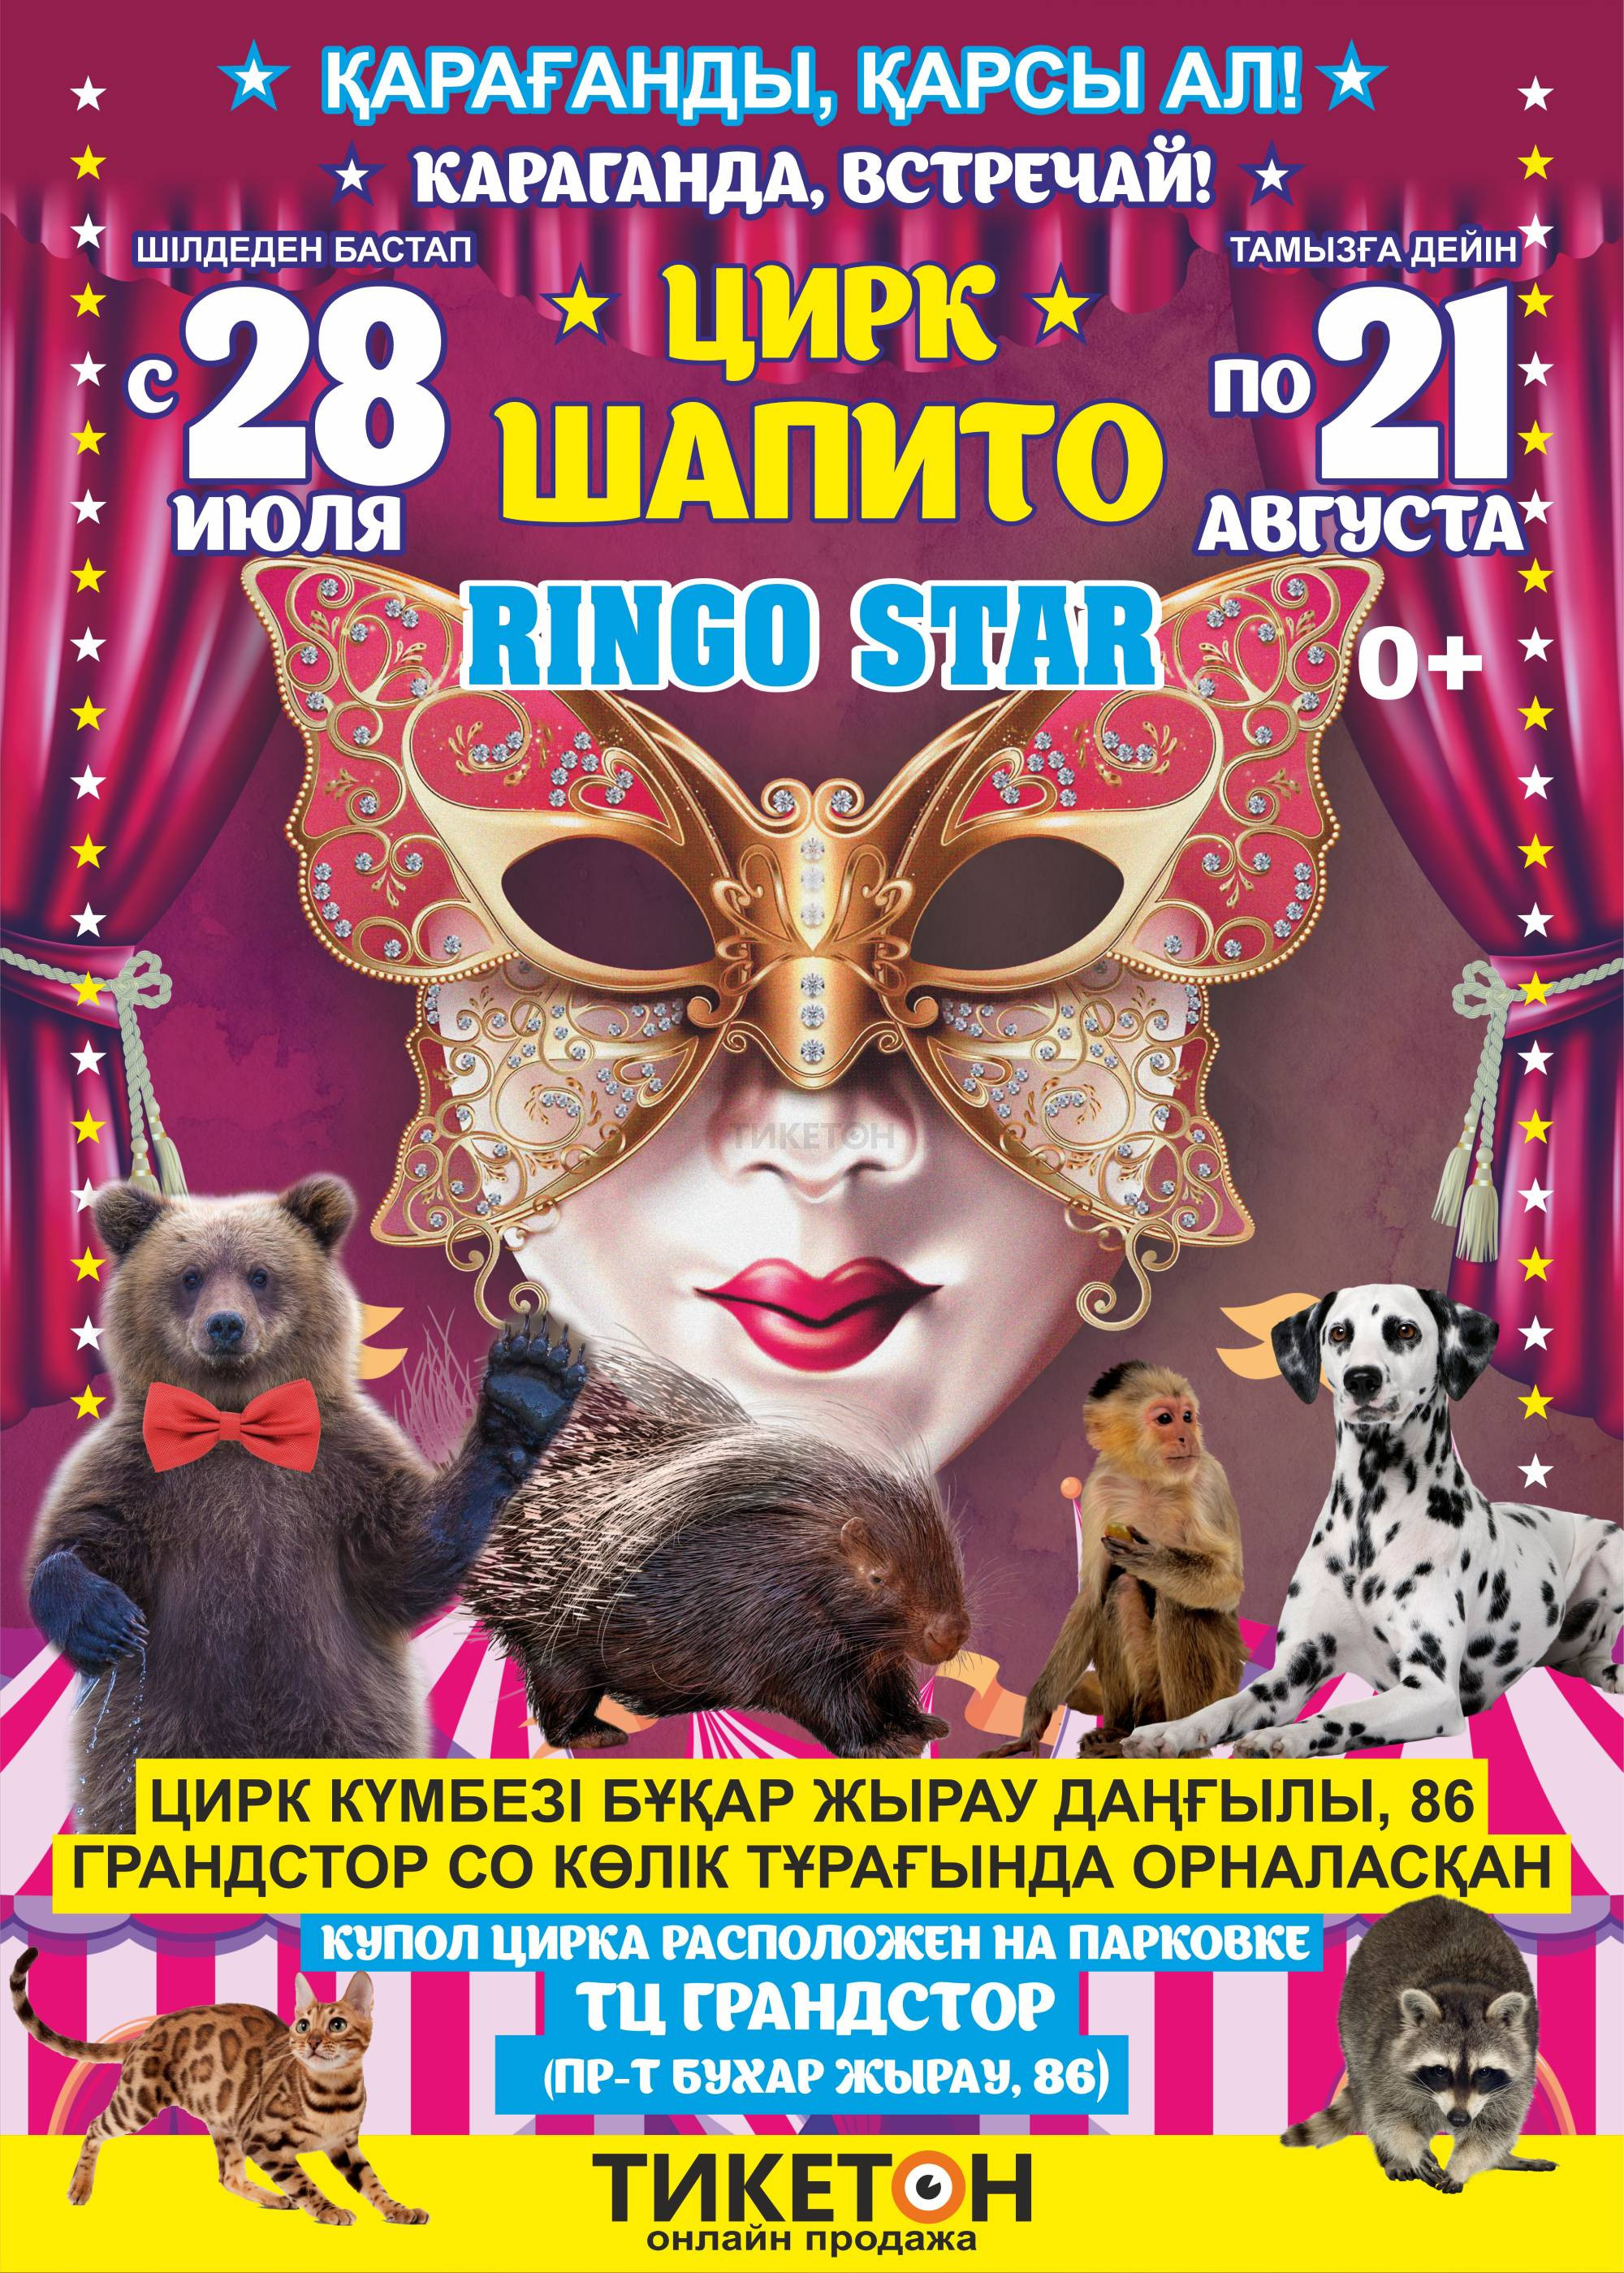 Цирк-шапито «Ringo Star» в Караганде